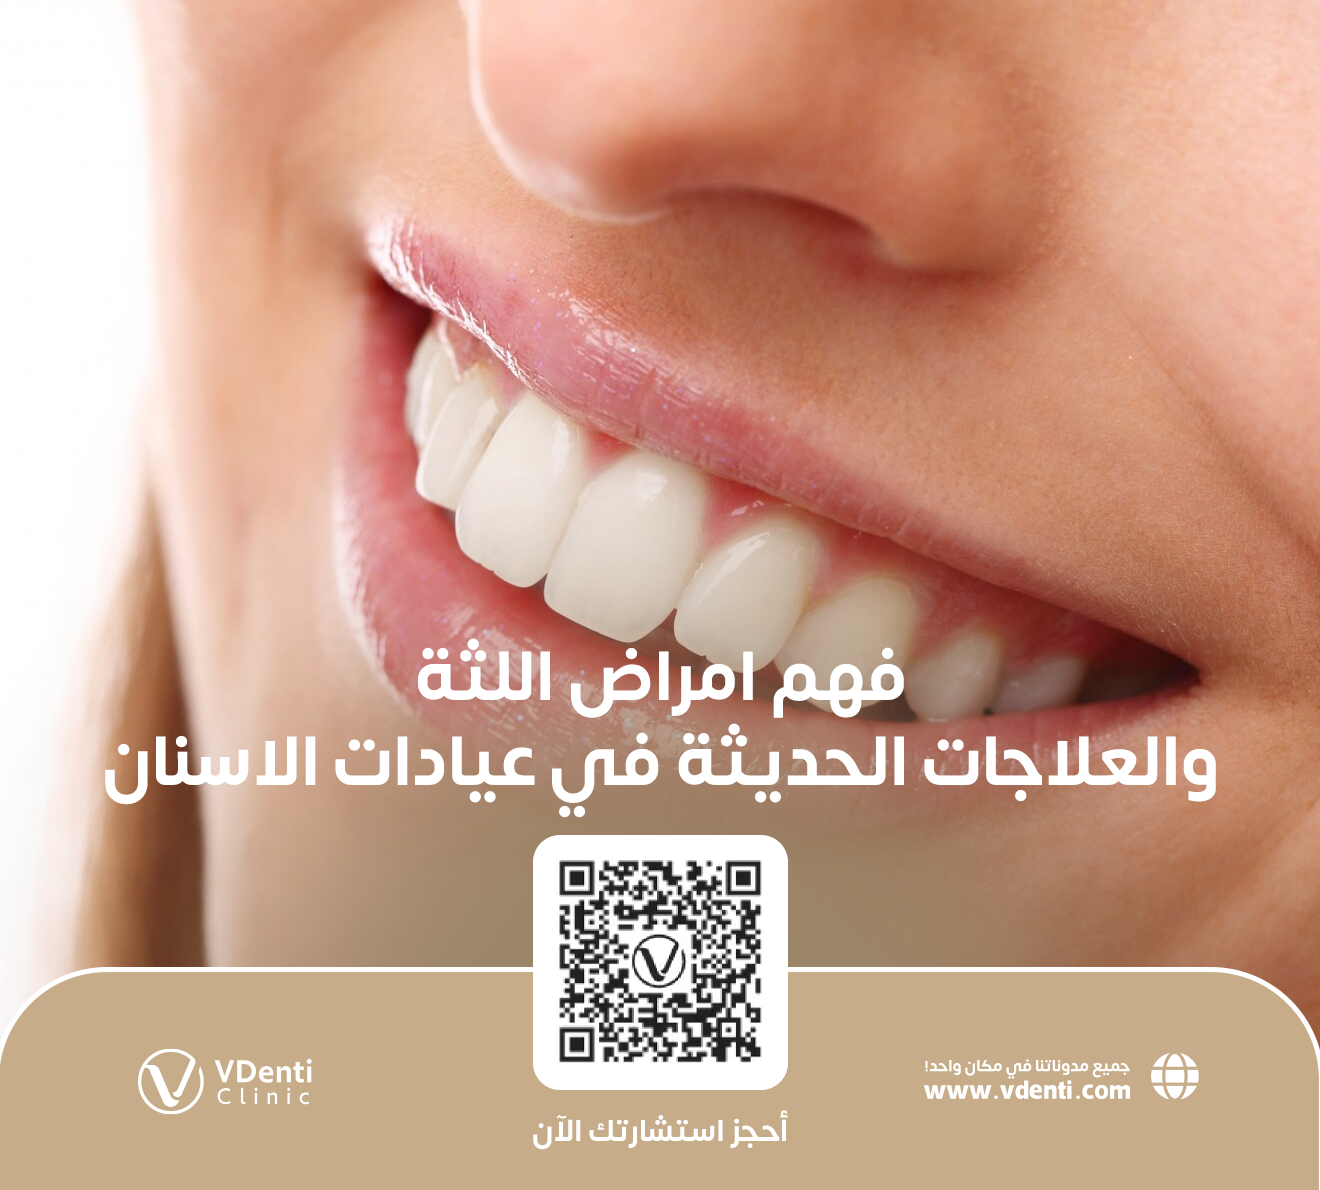 دليل شامل لفهم امراض اللثة والعلاجات الحديثة في عيادات الاسنان بجدة